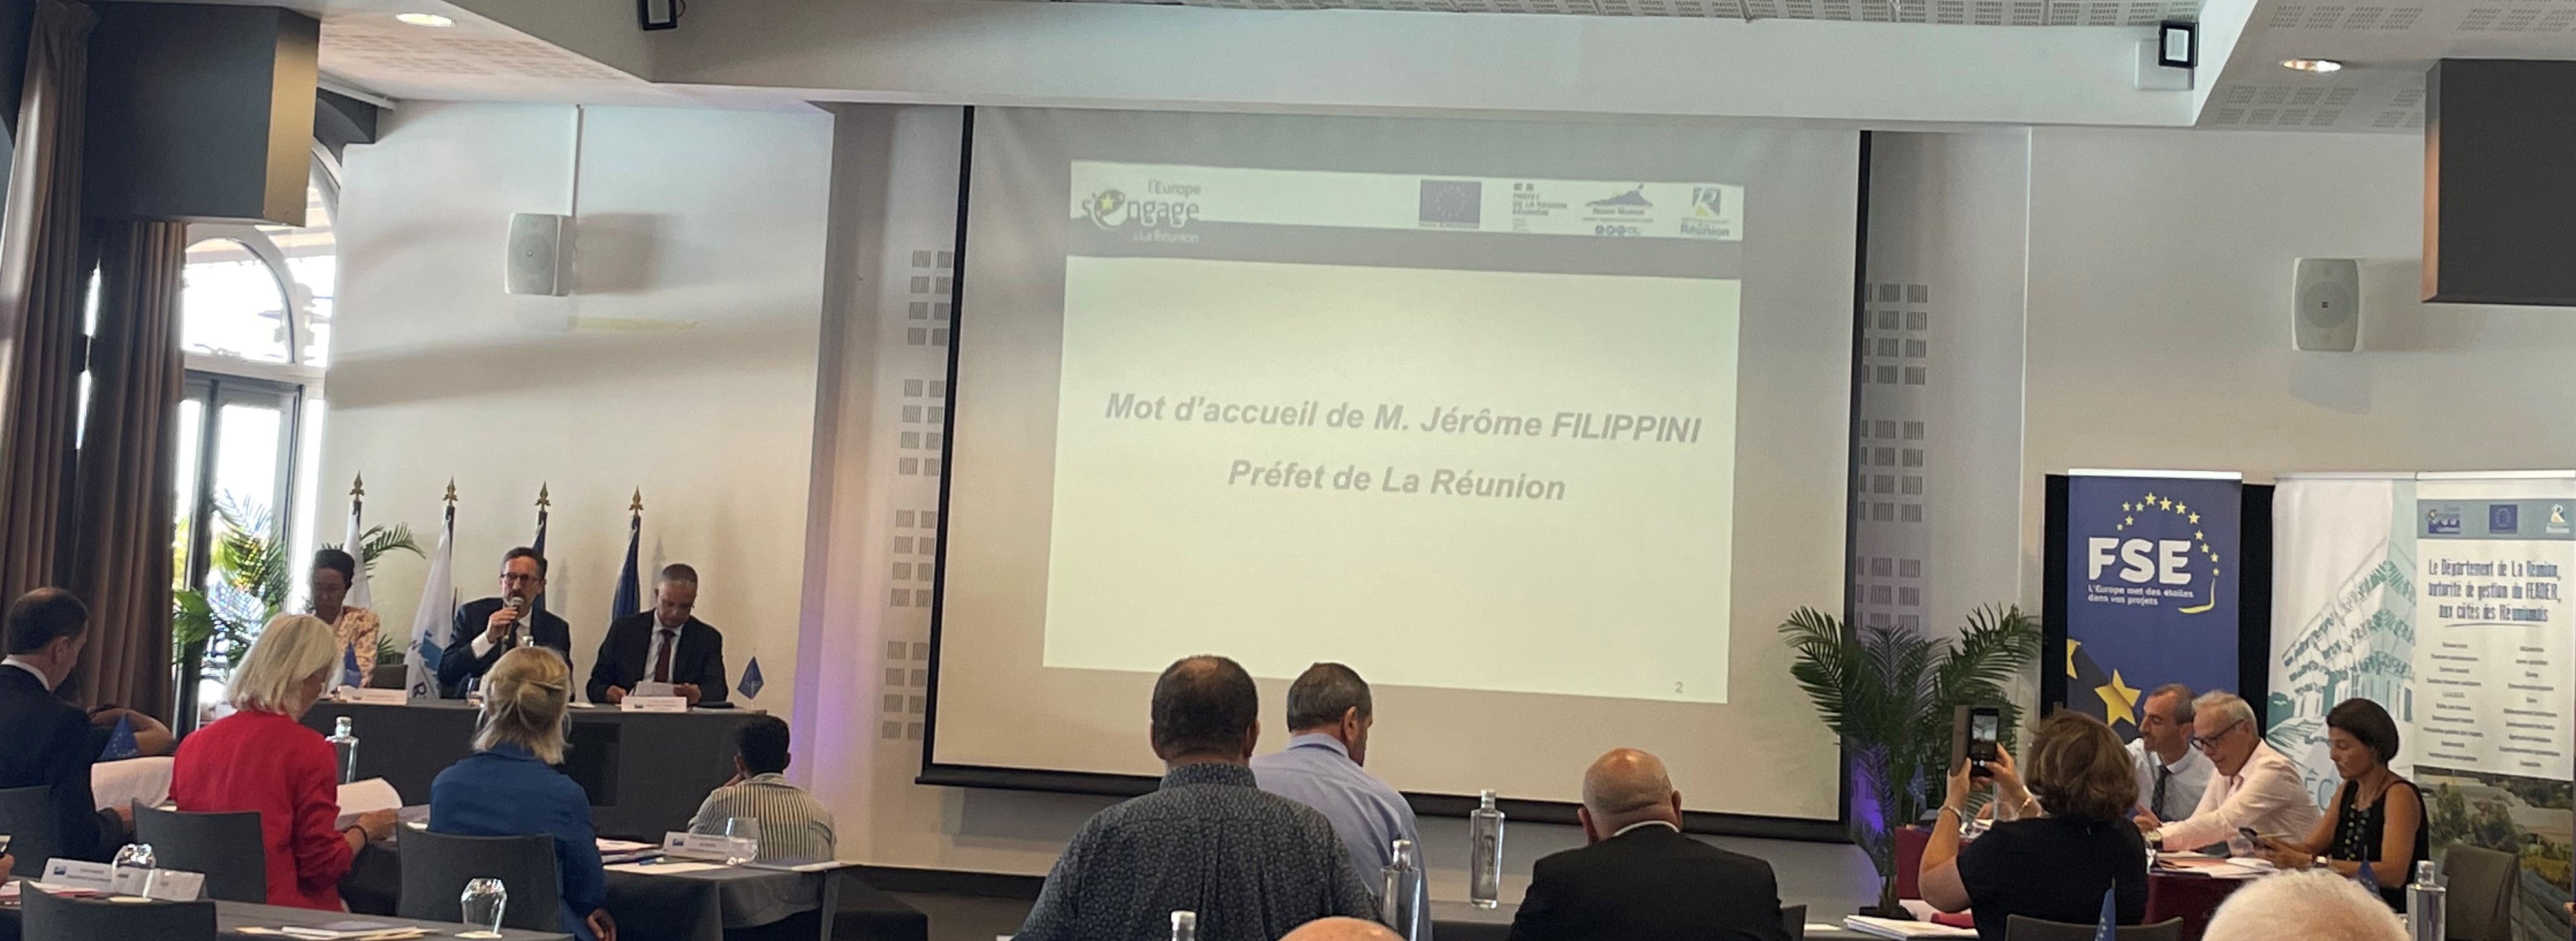 La délégation de la Commission européenne en visite à La Réunion à l’occasion du Comité national de suivi plurifonds